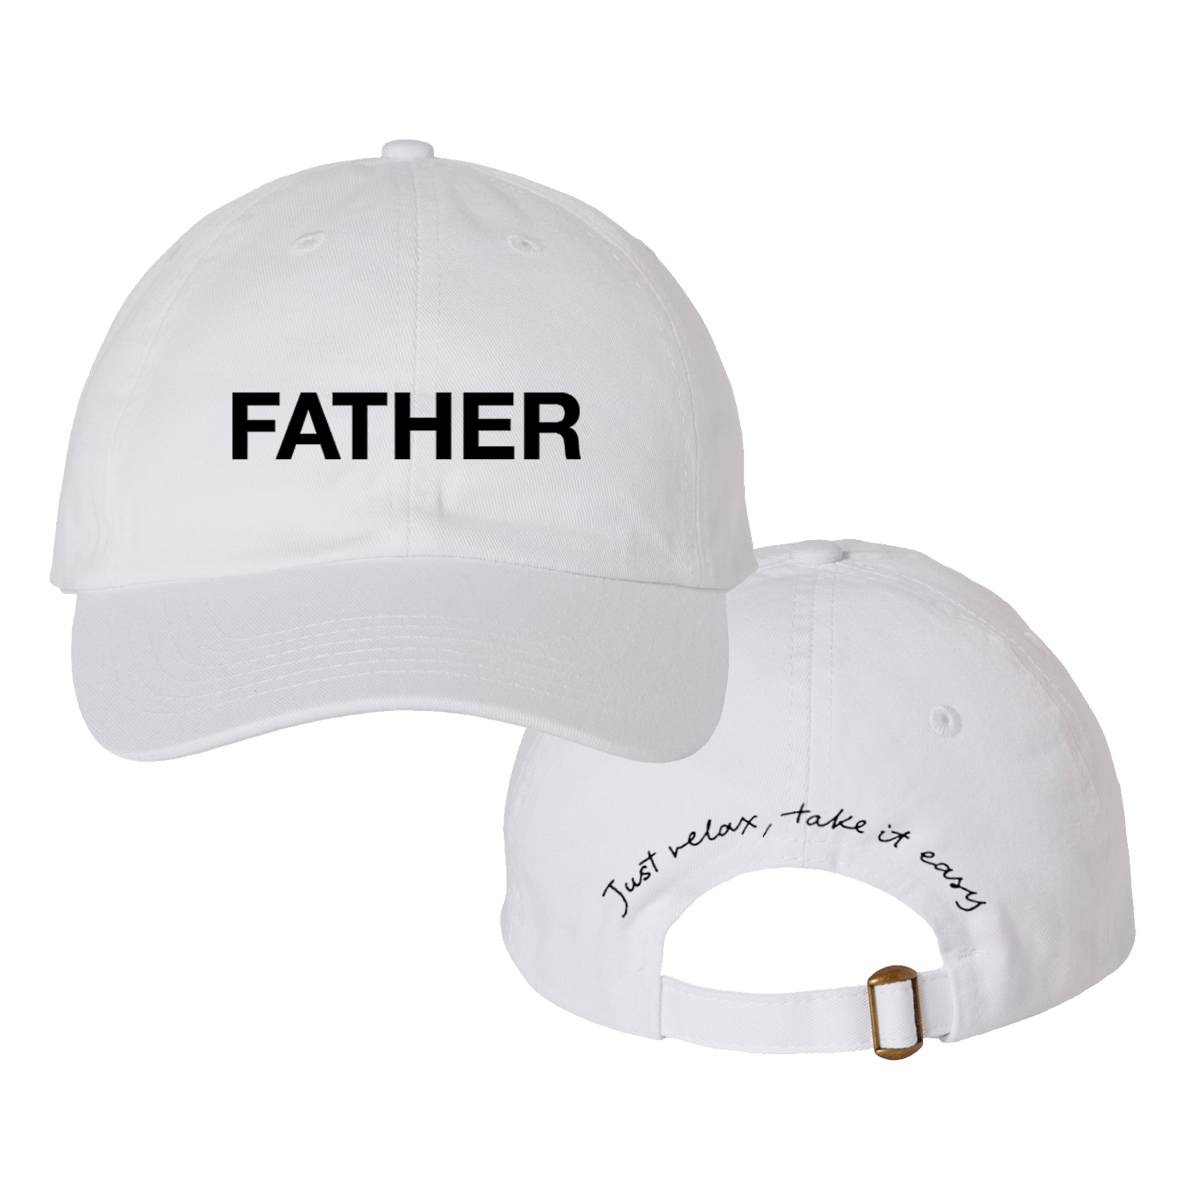 Father Son Hat Bundle